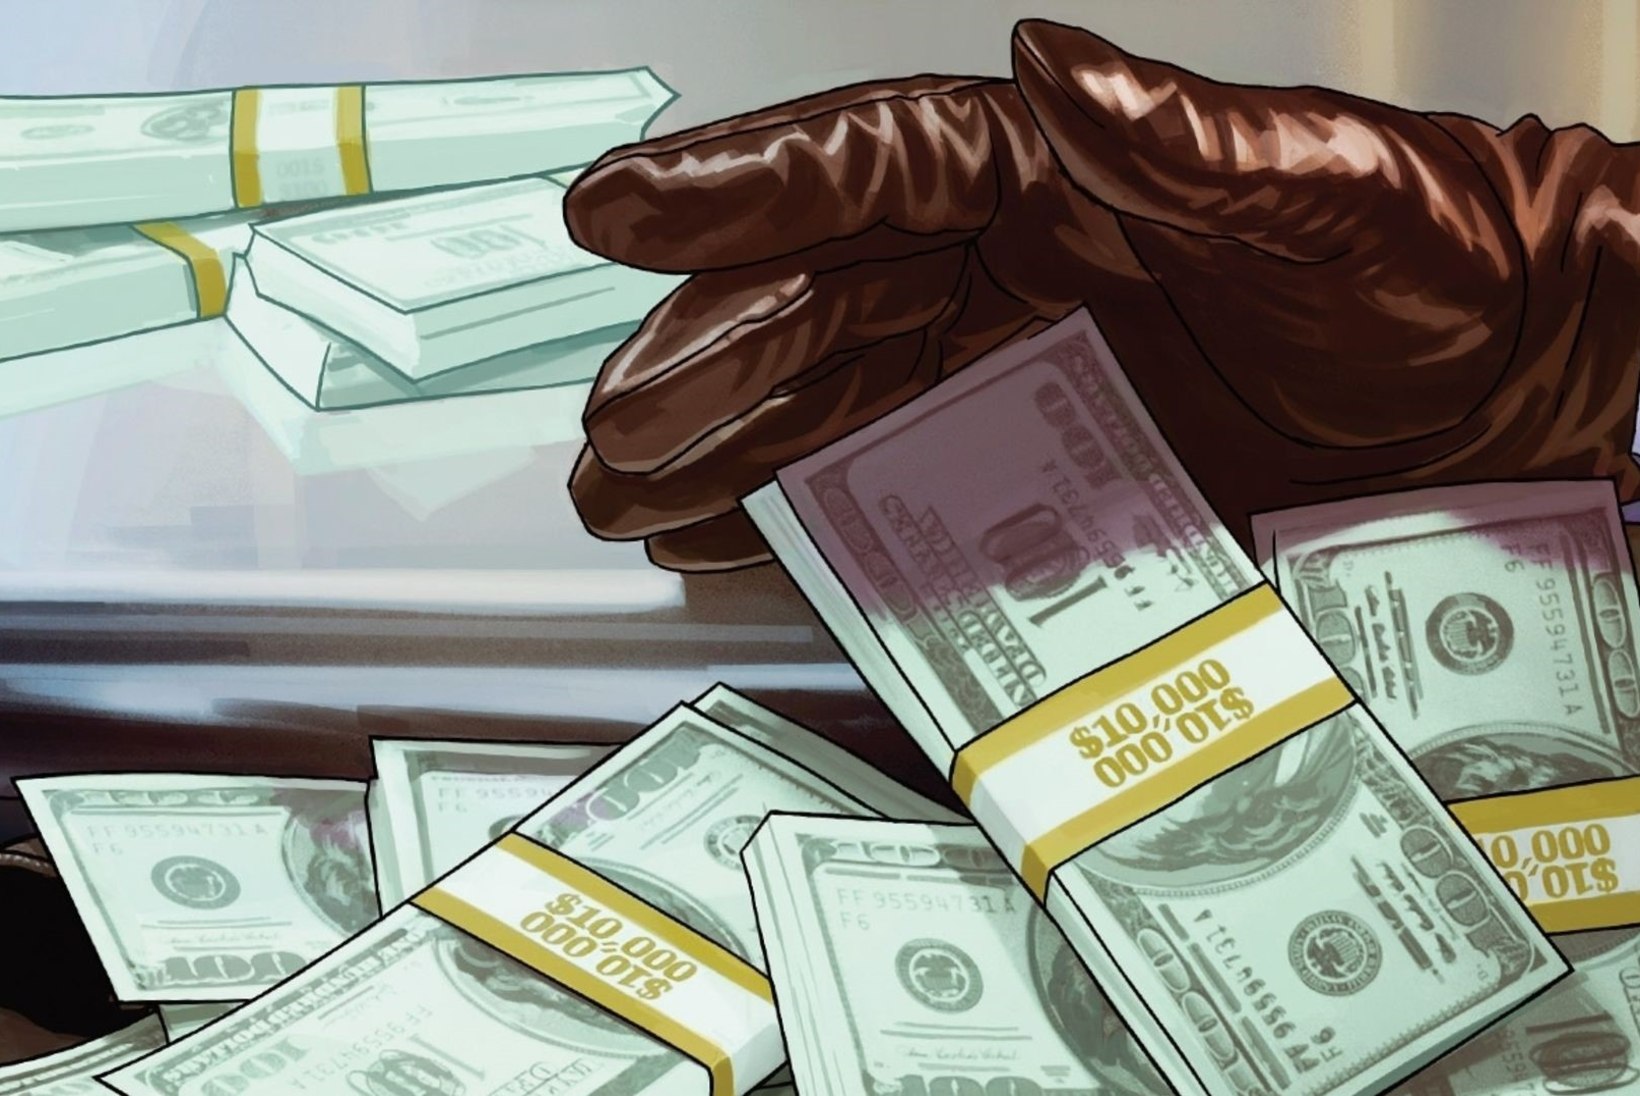 TASUTA RAHA: Rockstar jagab kõikidele „GTA Online“ mängijatele pool miljonit dollarit